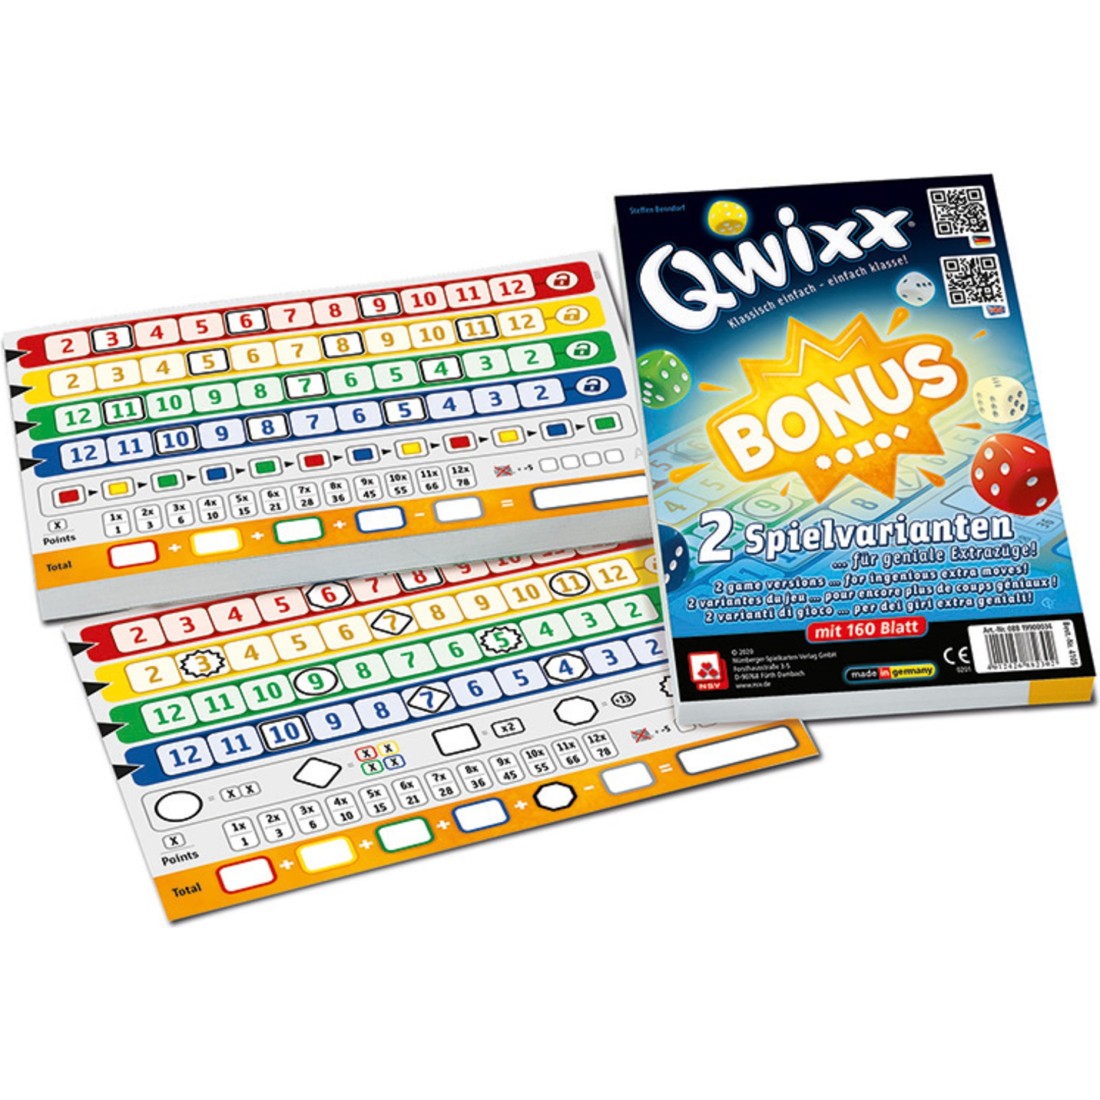 Qwixx - Acheter le jeu de société